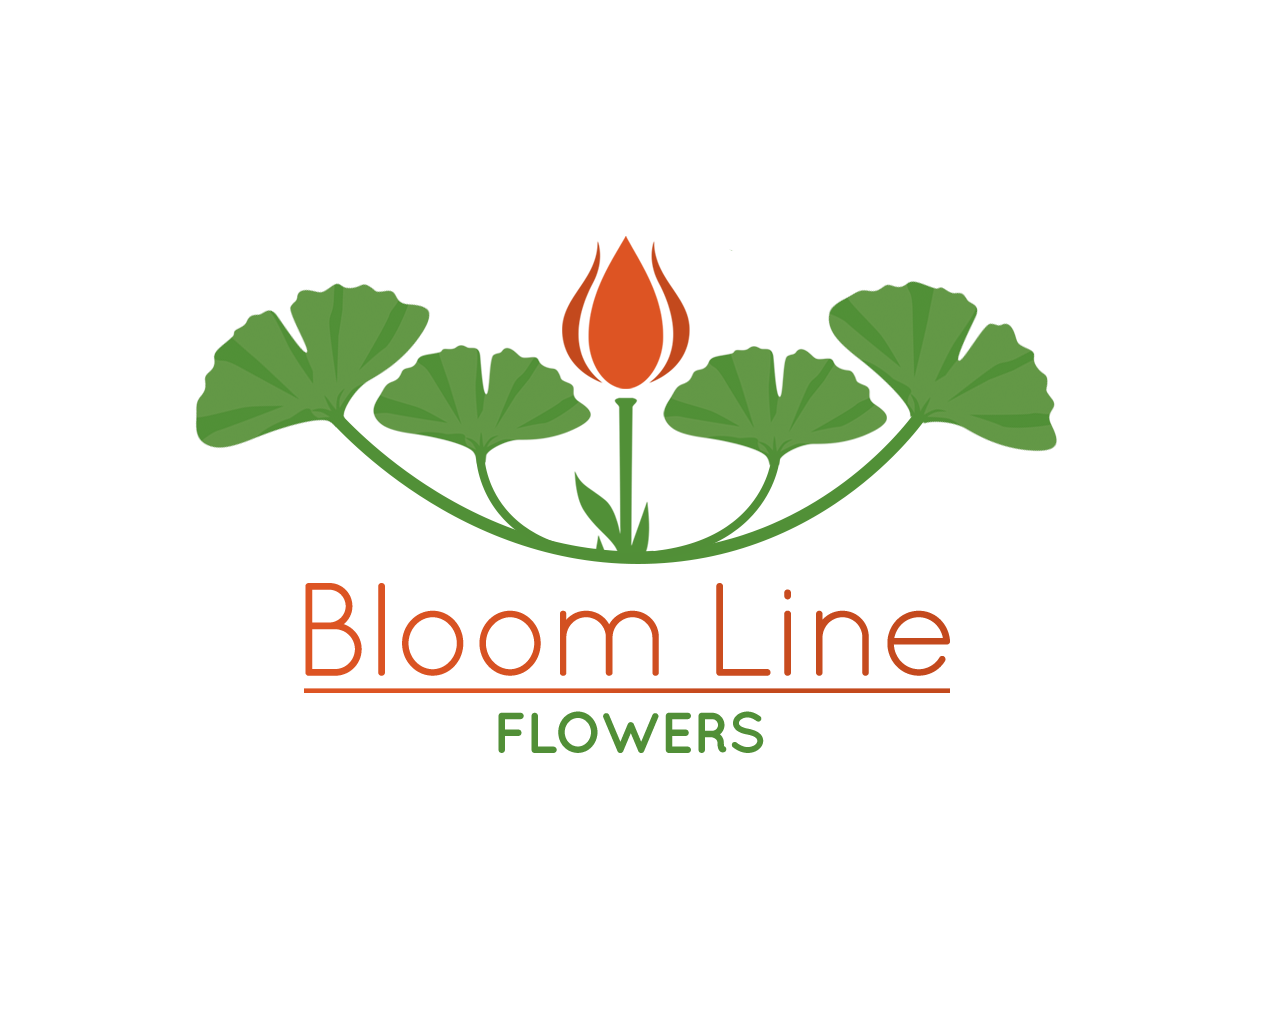 Bloom Line Flowers